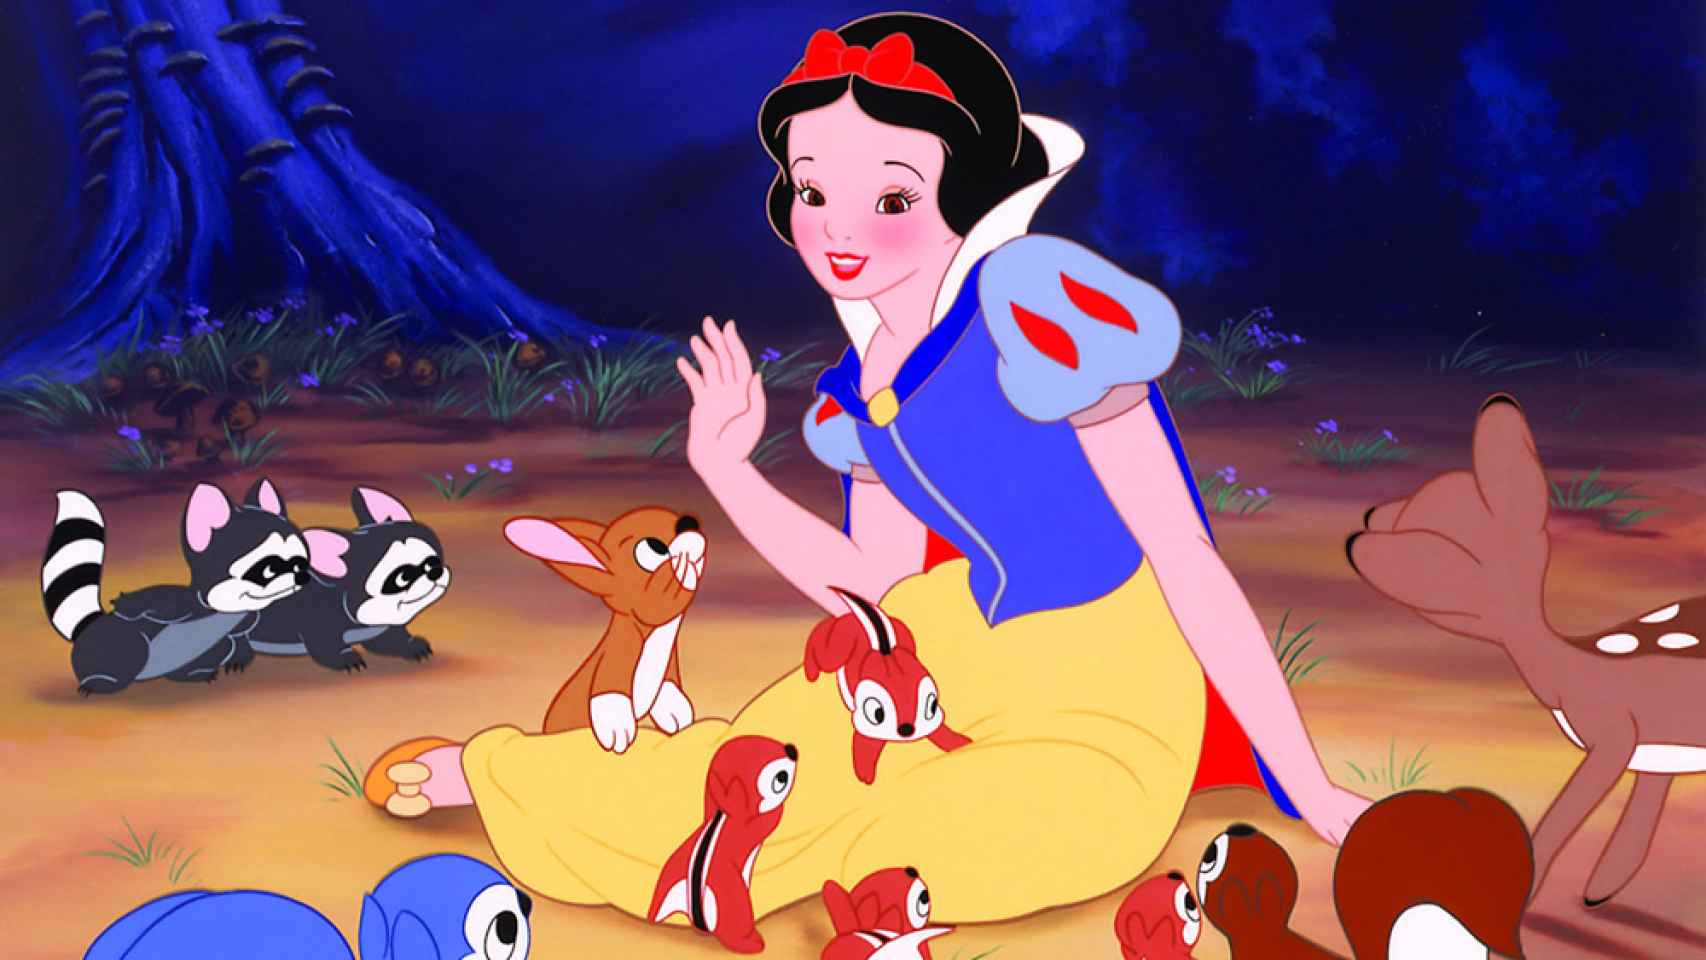 Fotograma de Blancanieves y los siete enanitos, el primer clásico Disney.